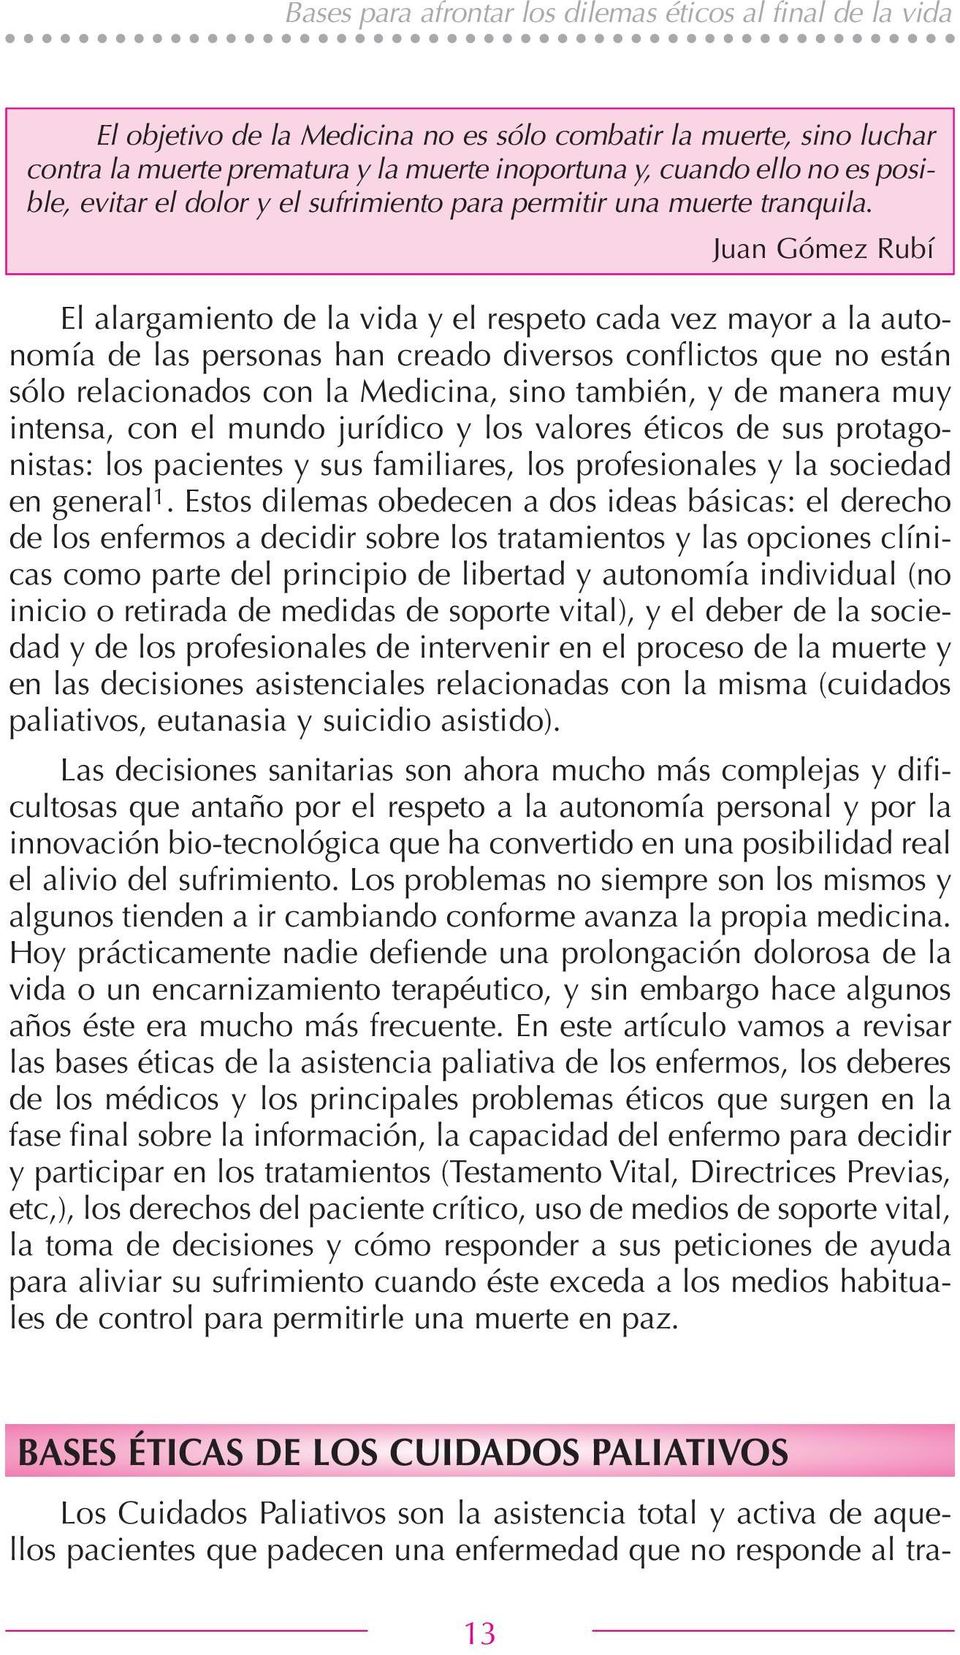 Juan Gómez Rubí El alargamiento de la vida y el respeto cada vez mayor a la autonomía de las personas han creado diversos conflictos que no están sólo relacionados con la Medicina, sino también, y de